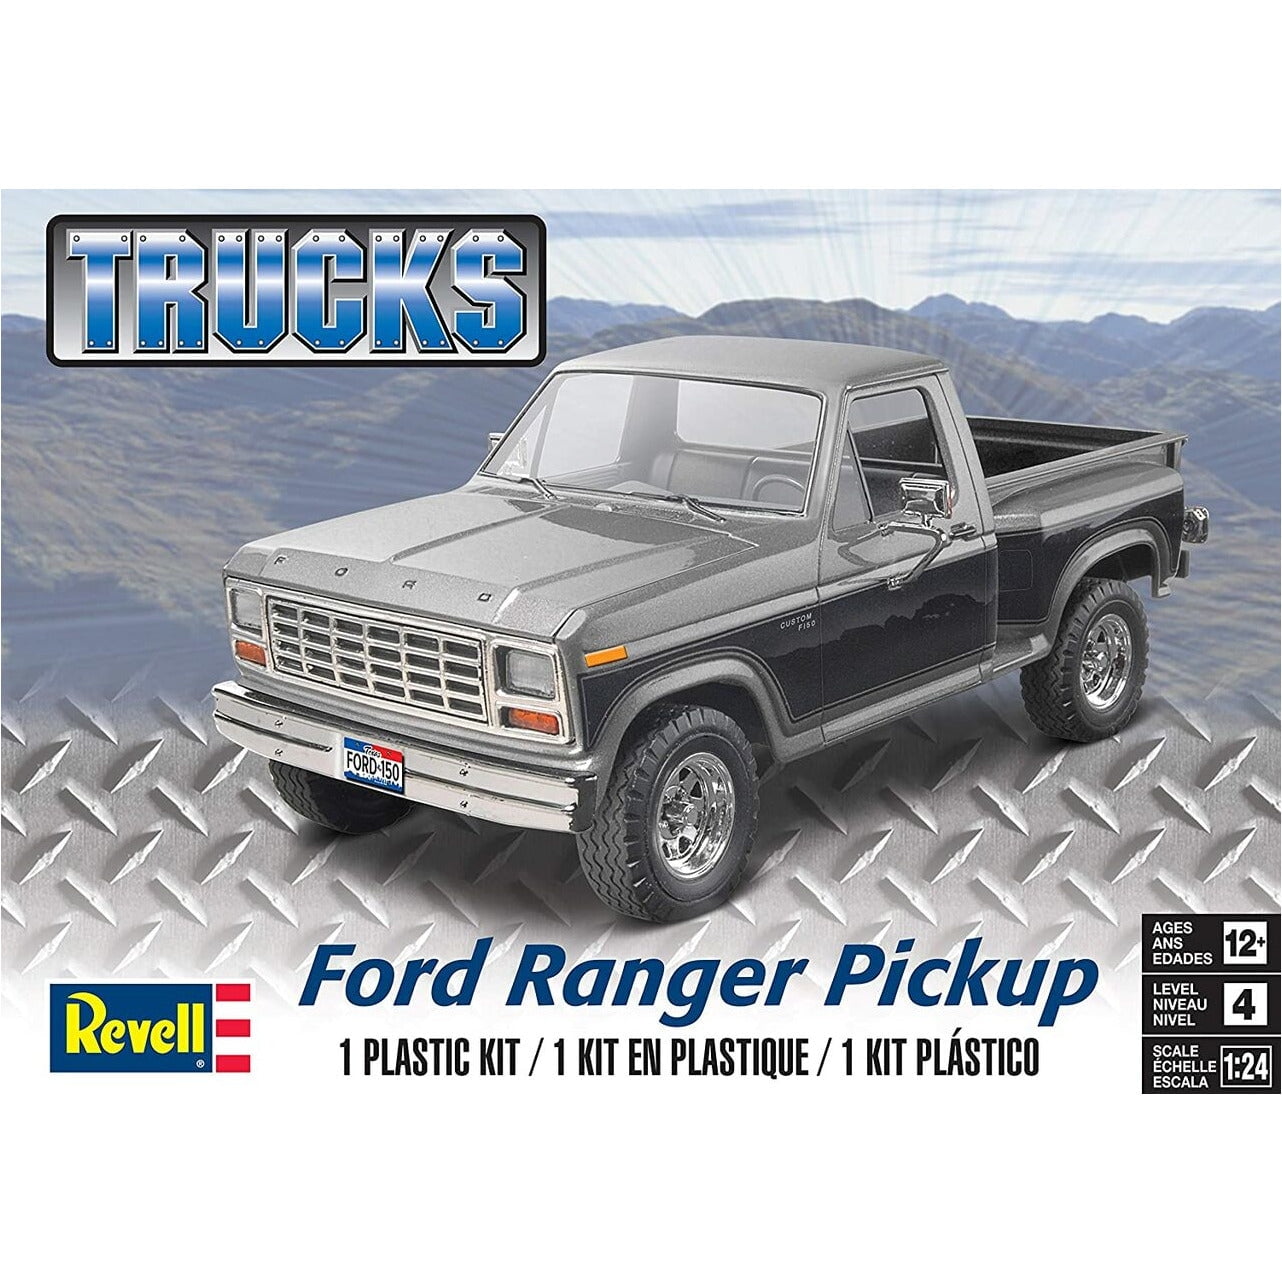 Level 4 Model Kit Ford Ranger Pickup Truck 1/24 Scale Model by Revell 